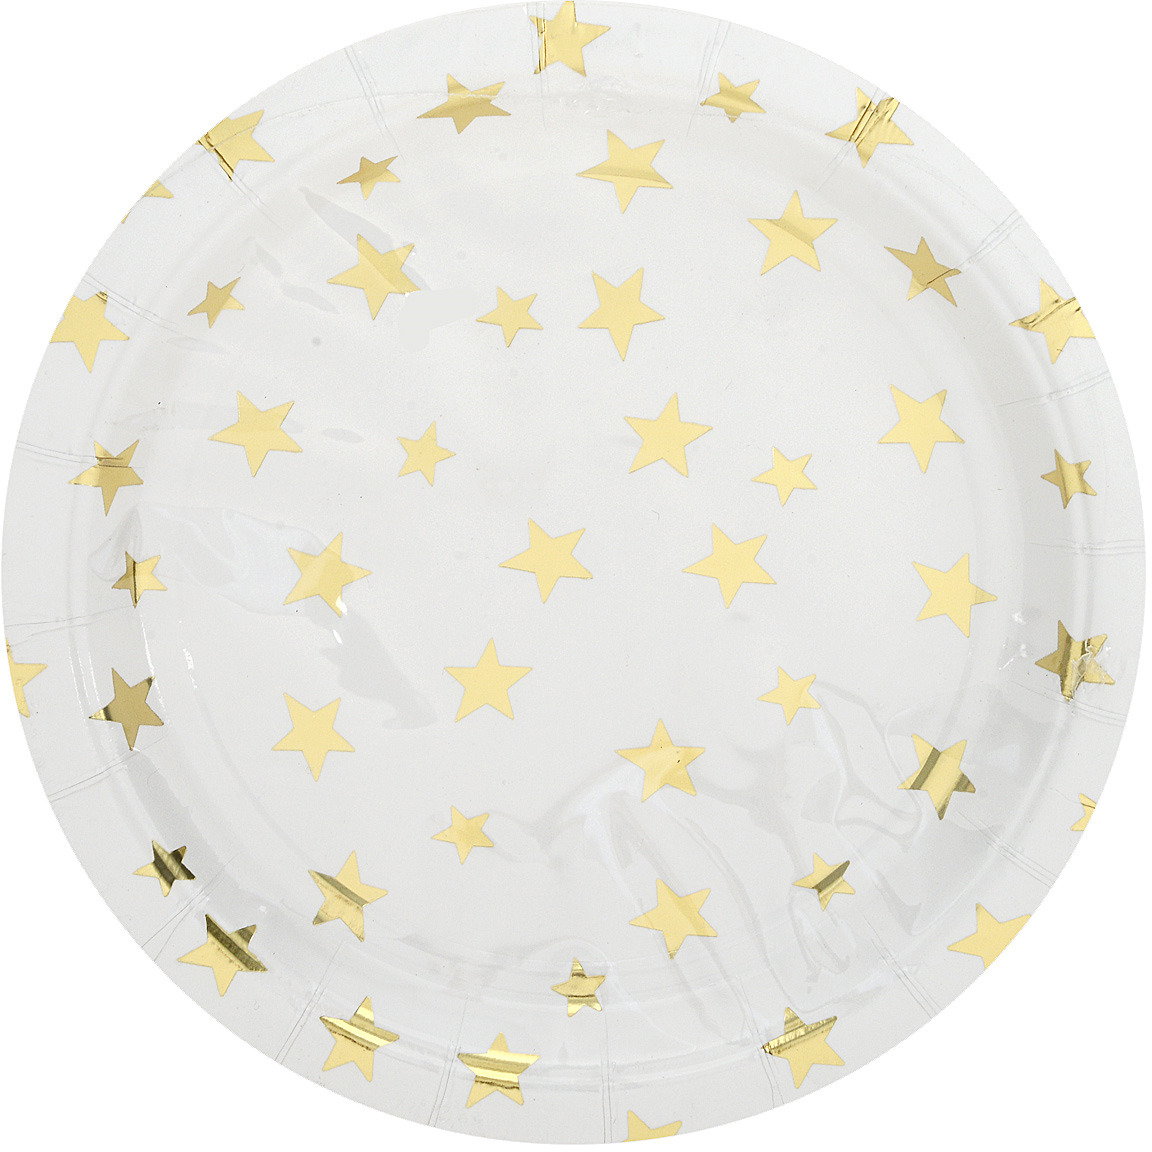 Тарелка Белая с золотыми звездами из ламинированного картона, диаметр 18 см, 6 шт в наборе / 1,8x18x18см арт.79289